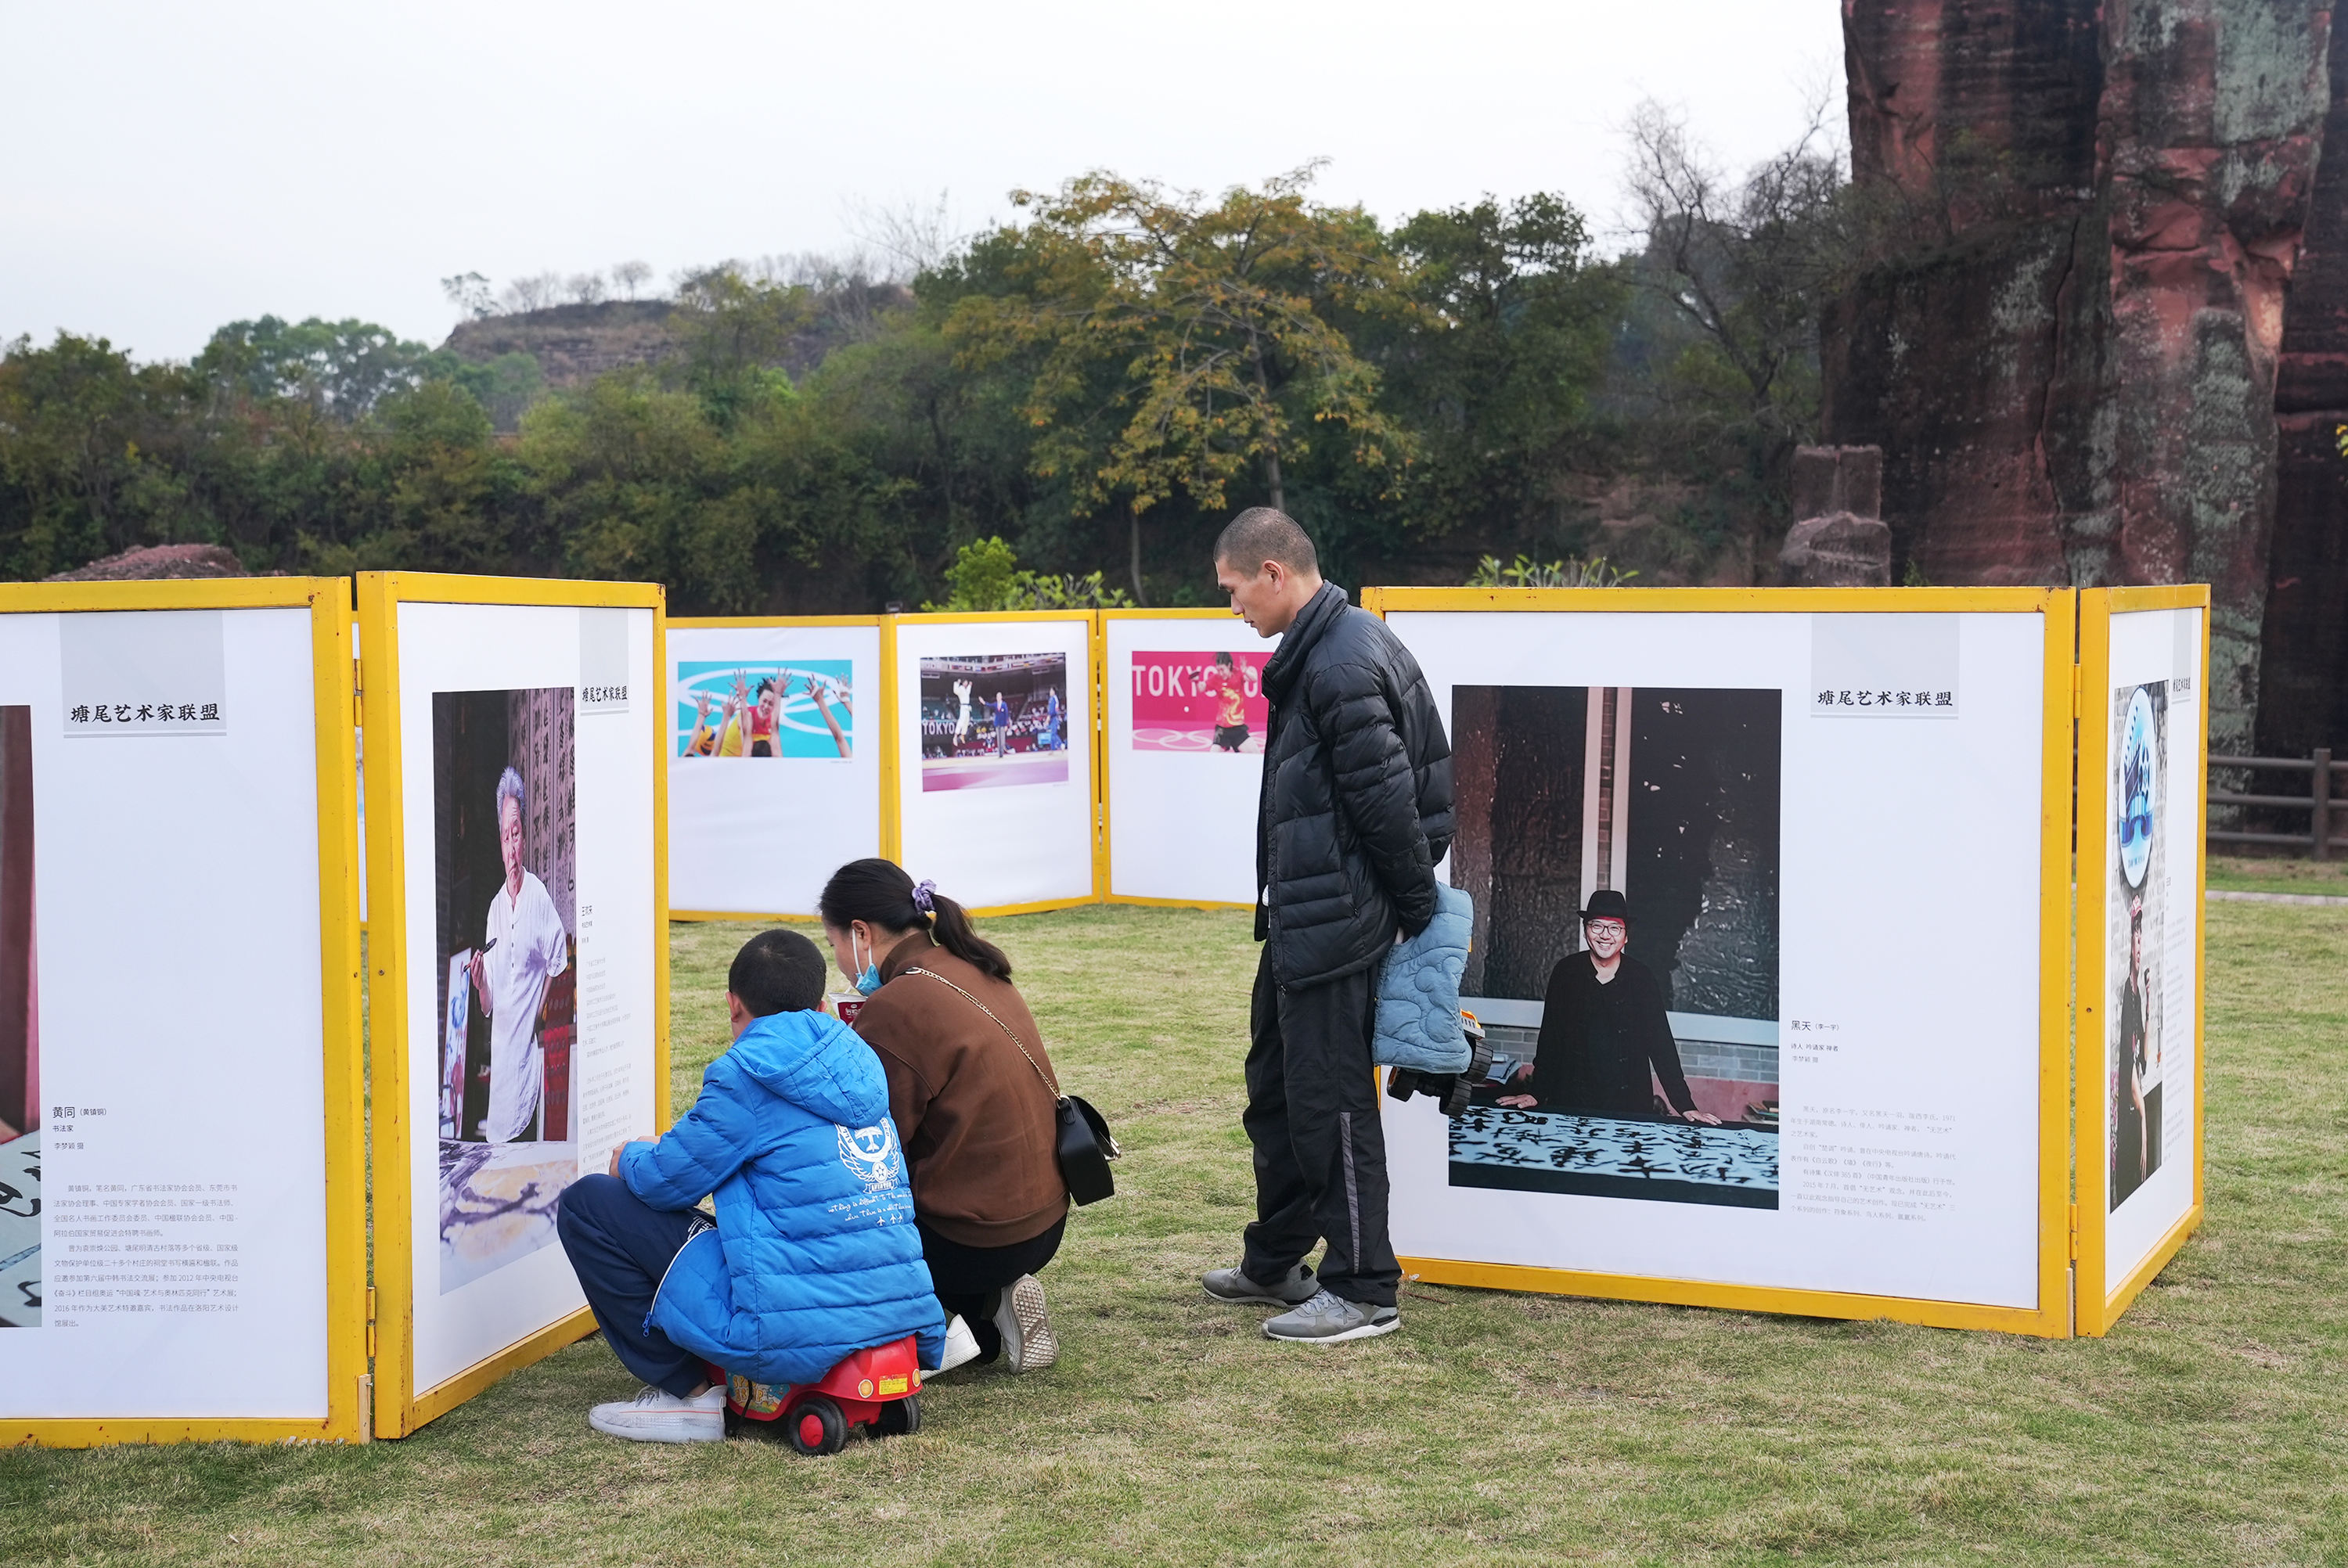 市民在观看草坪展览.陈俊凯 摄